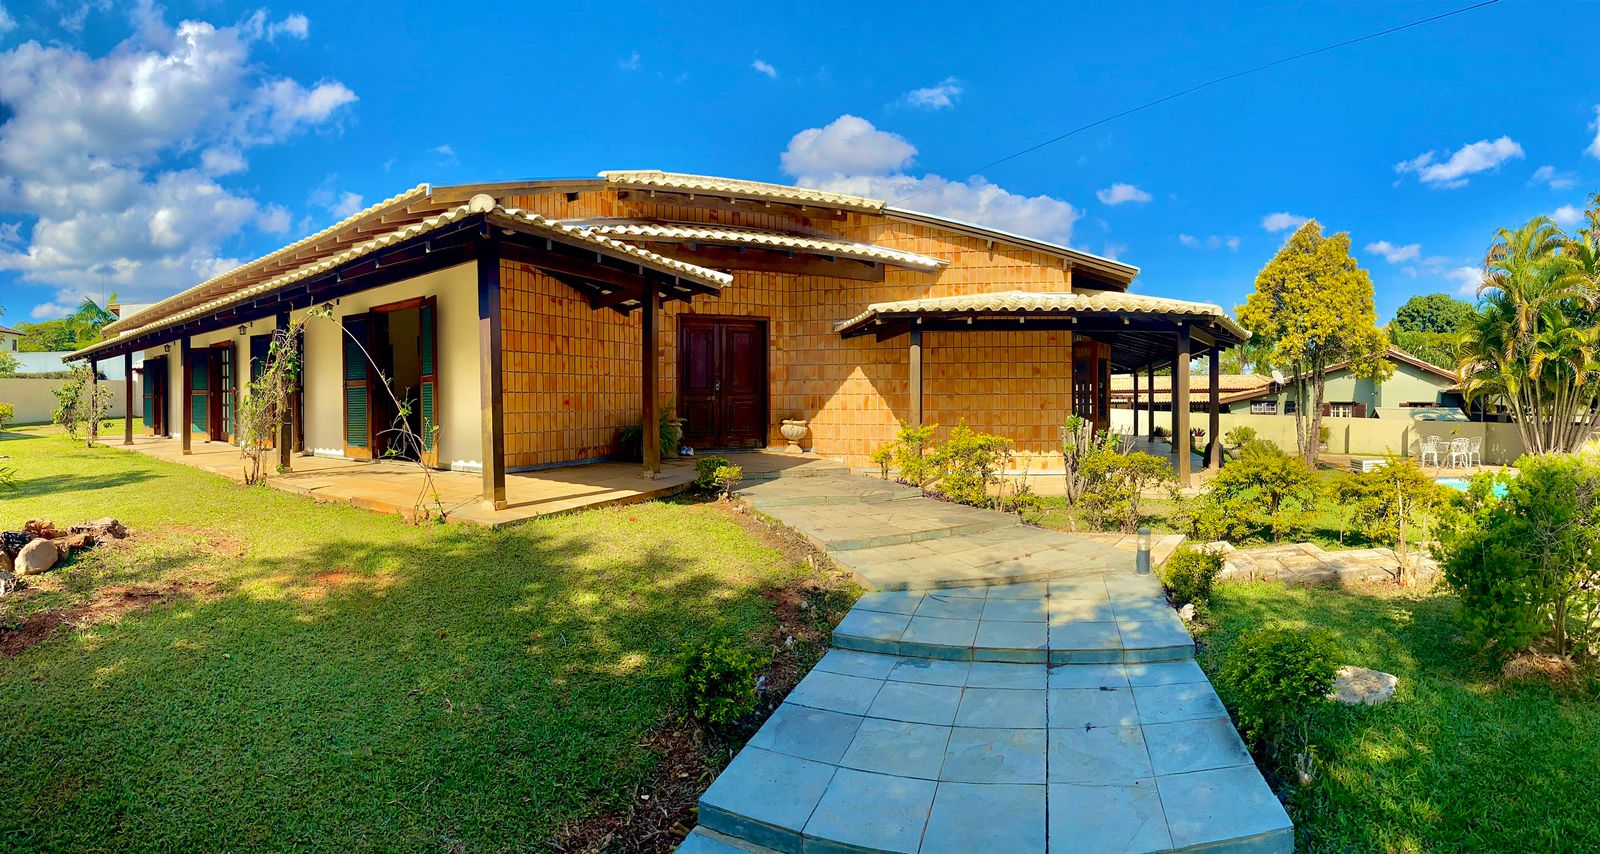 Casa em condomínio - Venda, Parque Residencial Colina das Estrelas, Tatuí, SP